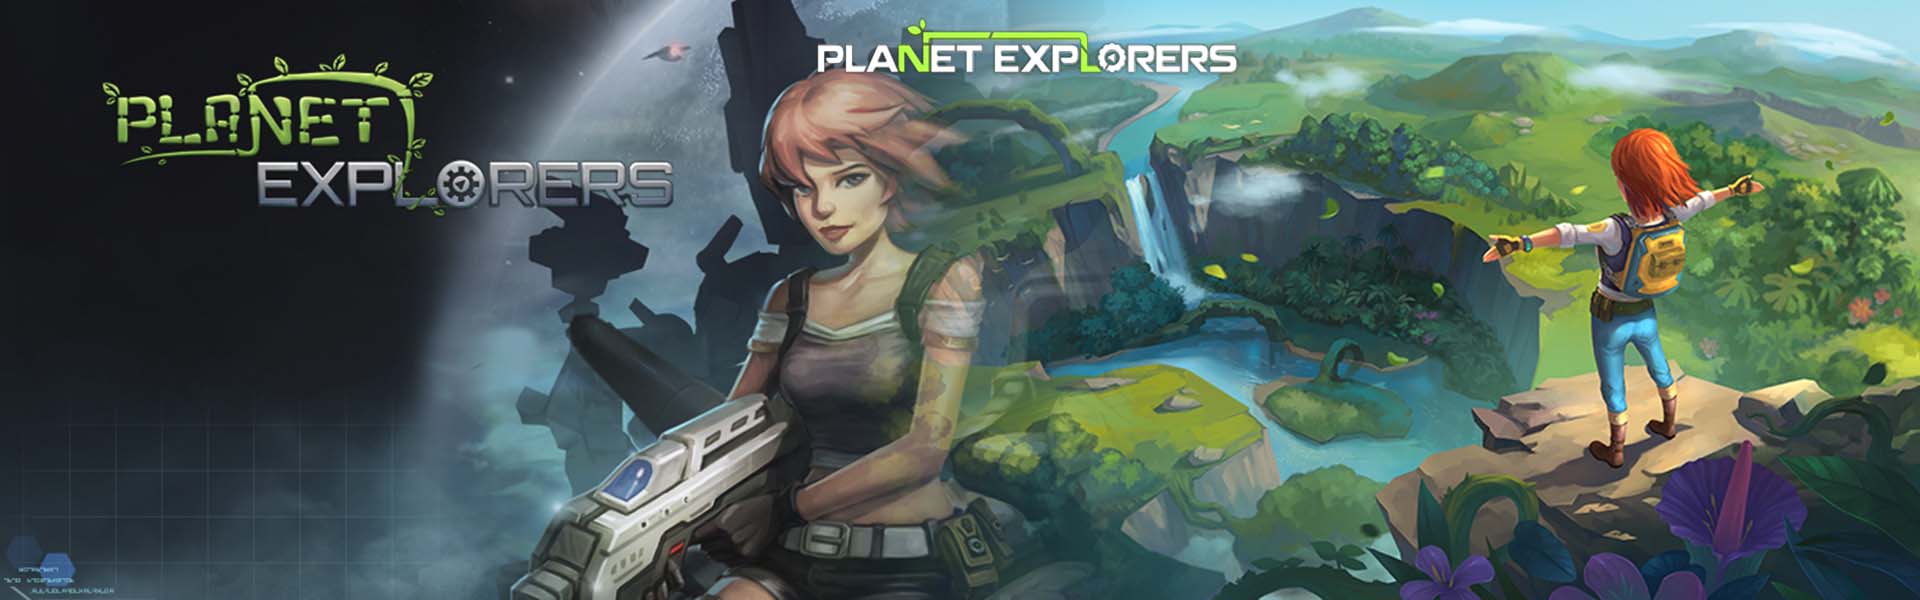 PlanetExplorers 01